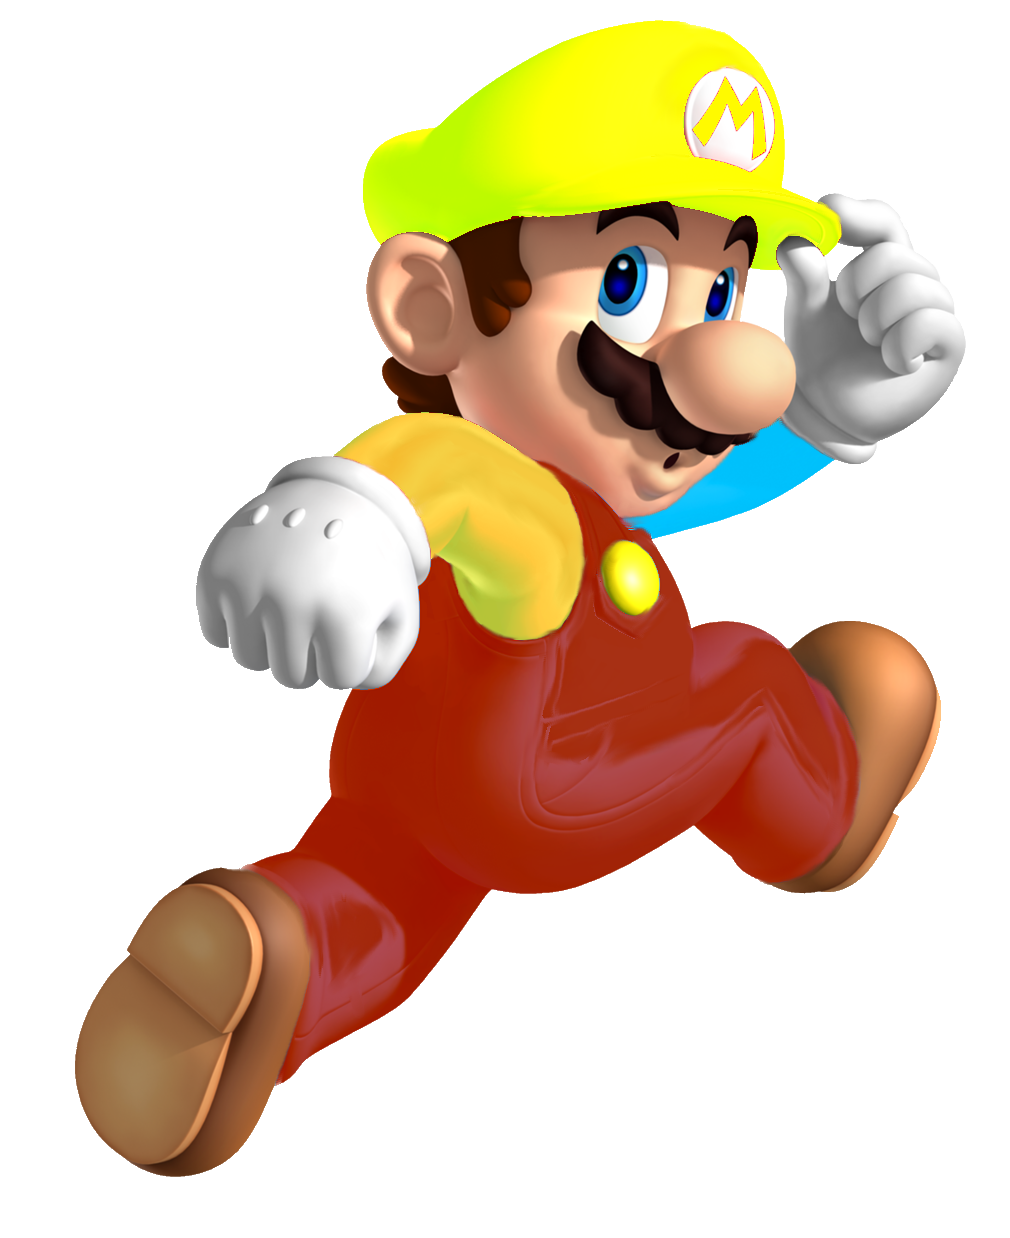 Image - Random Mario.png - Fantendo, the Nintendo Fanon Wiki - Nintendo ...